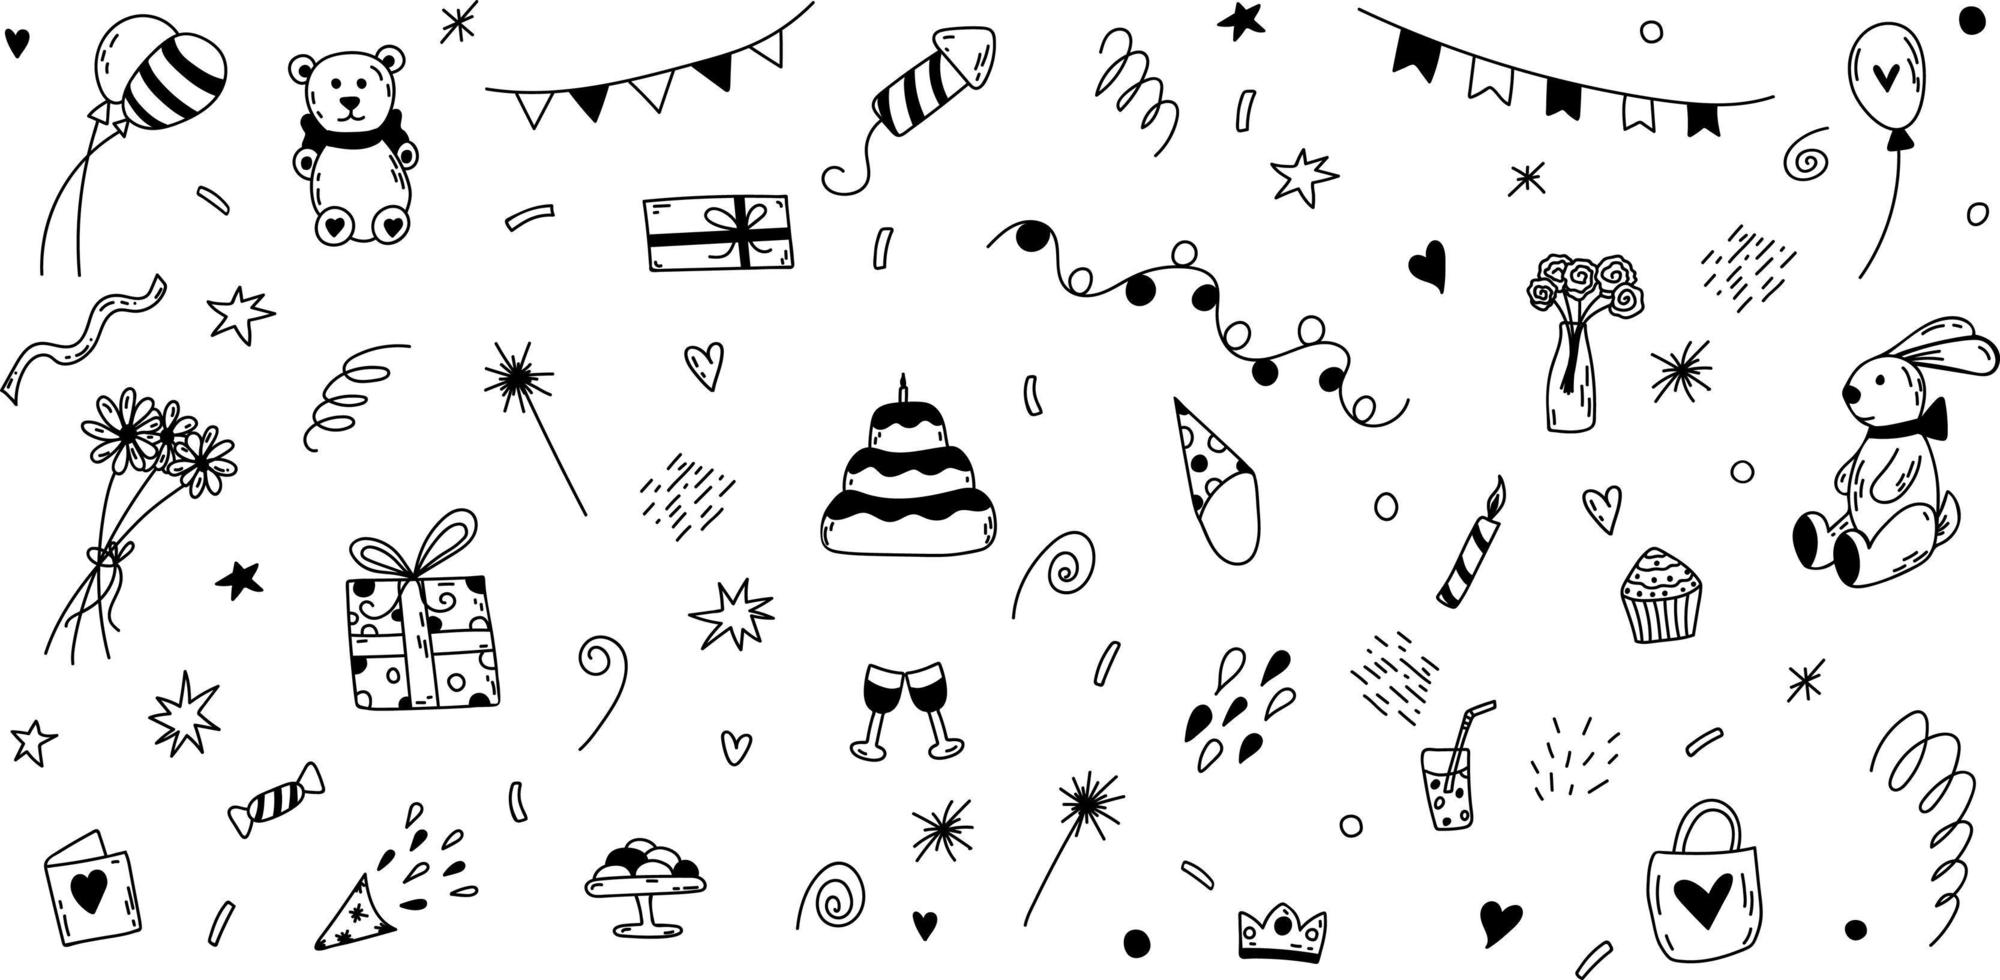 vector doodle cumpleaños conjunto de elementos. ilustración dibujada a mano con pastel, globos, cajas de regalo.